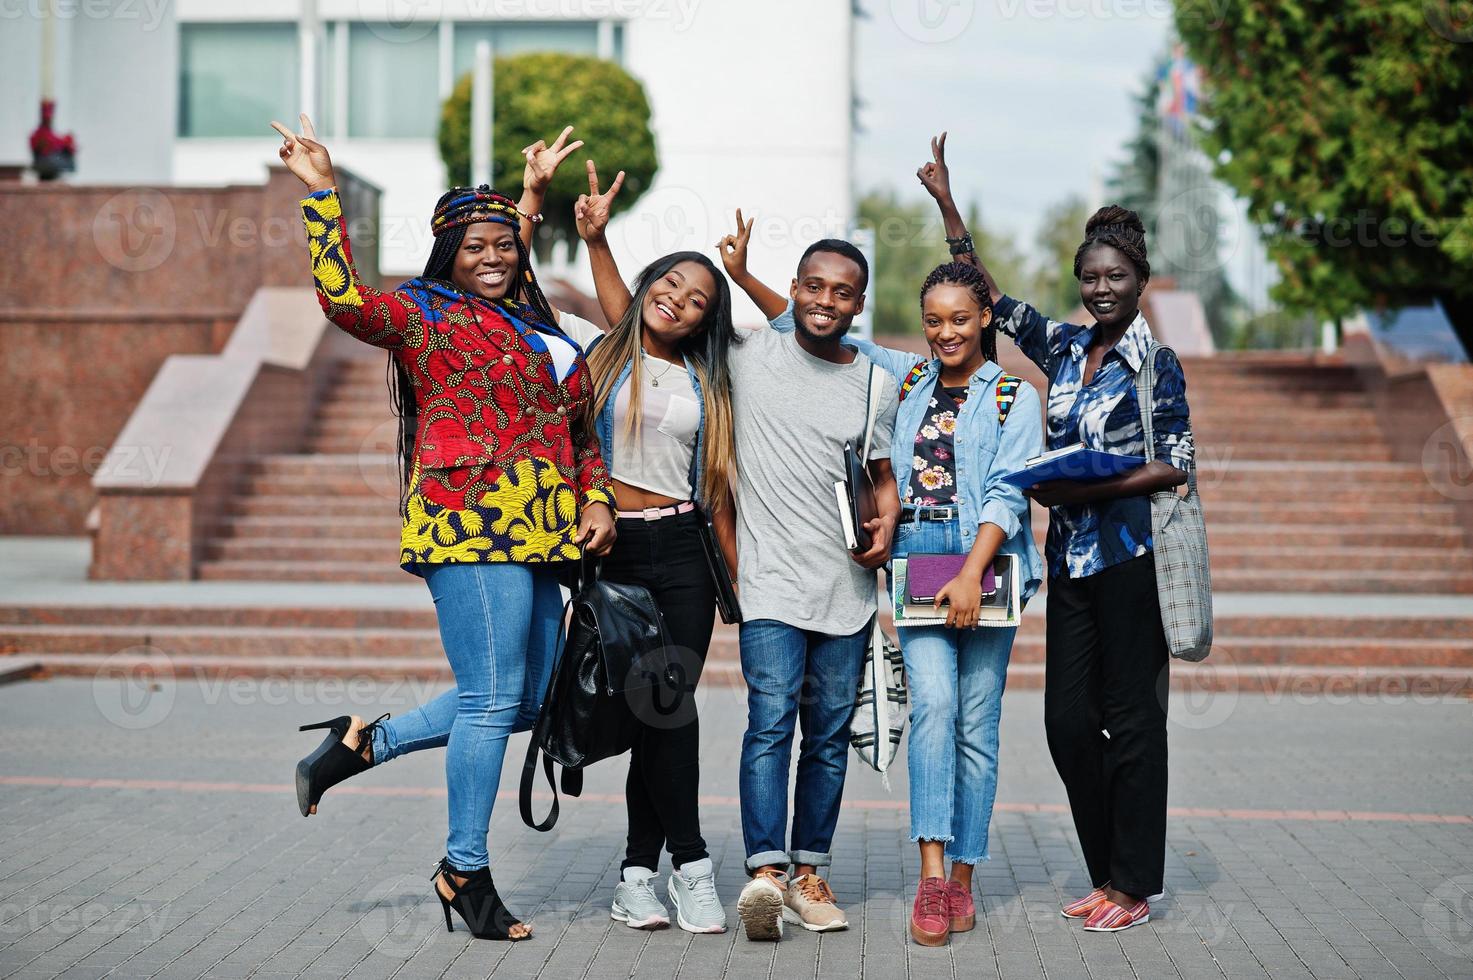 groupe de cinq étudiants africains qui passent du temps ensemble sur le campus de la cour universitaire. amis afro noirs qui étudient. thème de l'éducation. photo